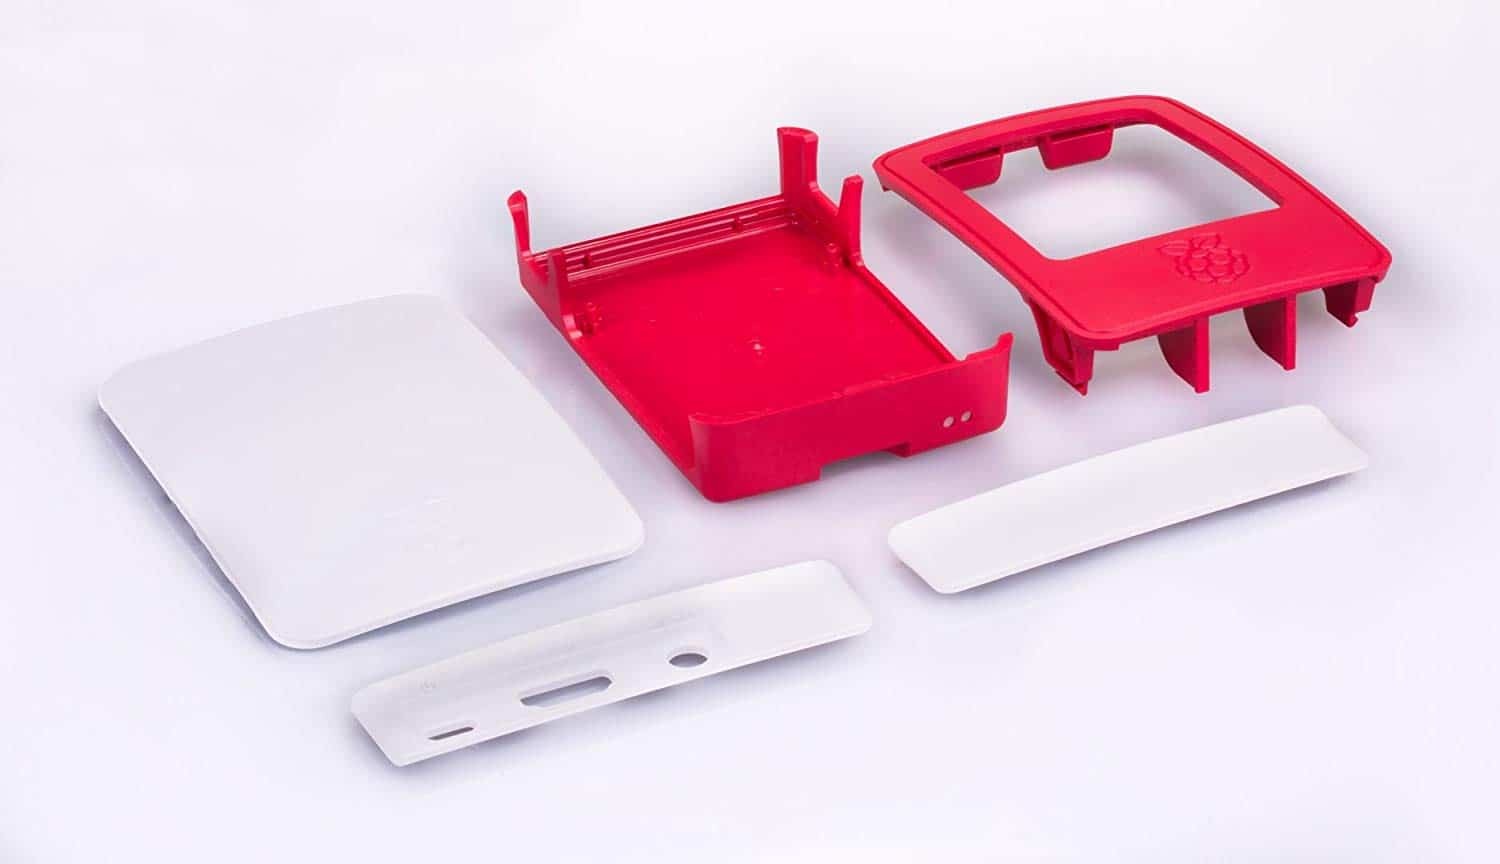 Official Red & White Casing for Raspberry Pi 3 Model B & Pi 3 Model B+